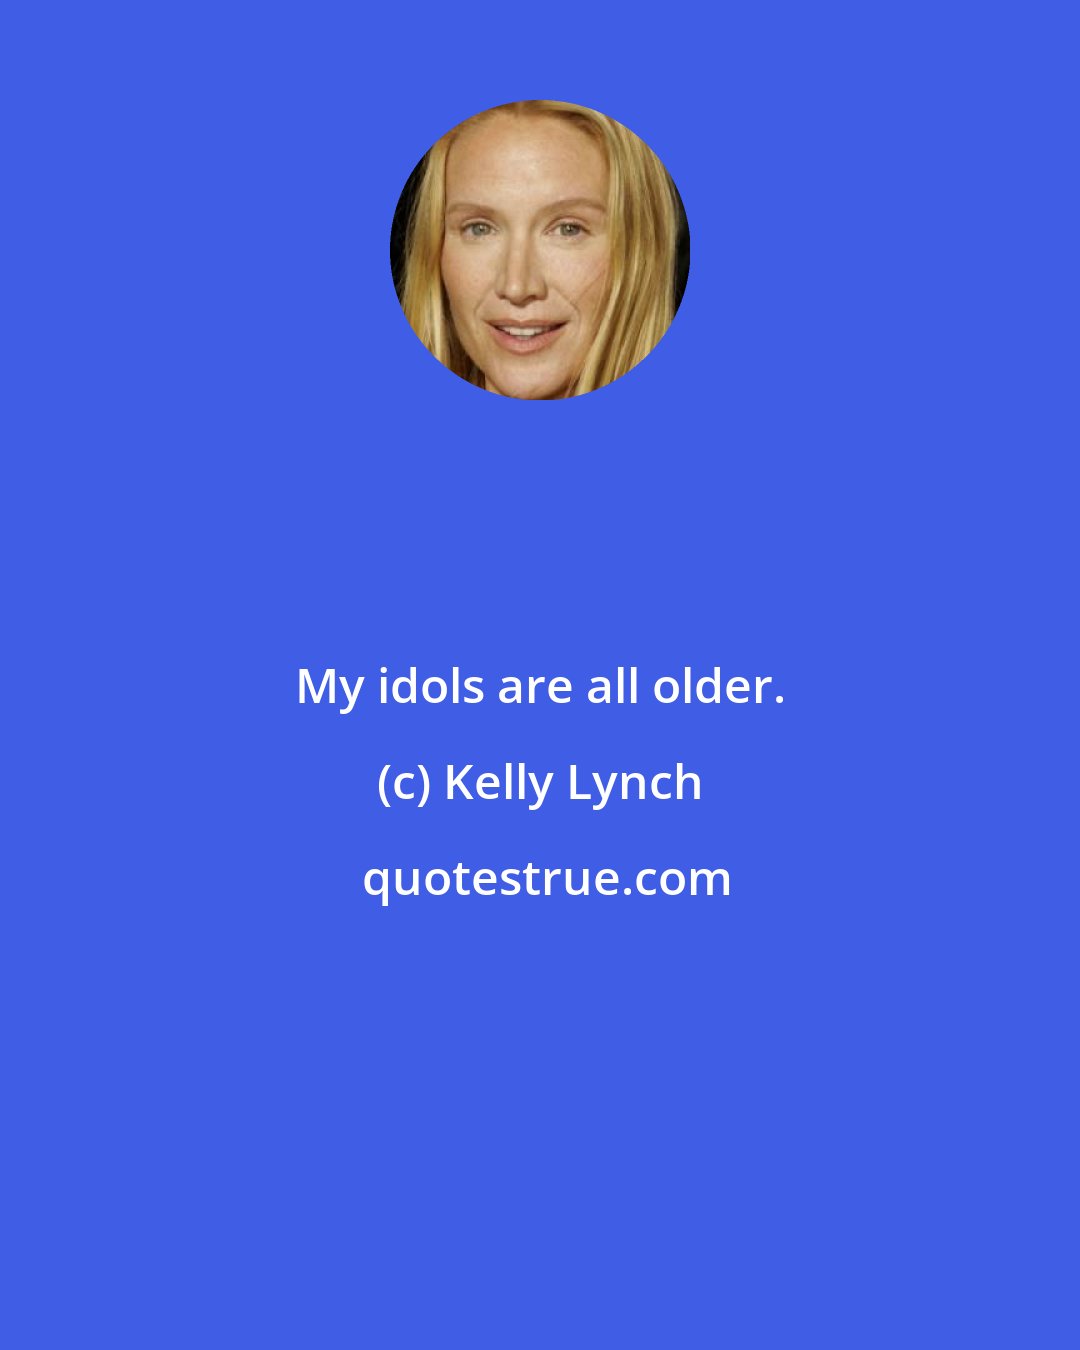 Kelly Lynch: My idols are all older.